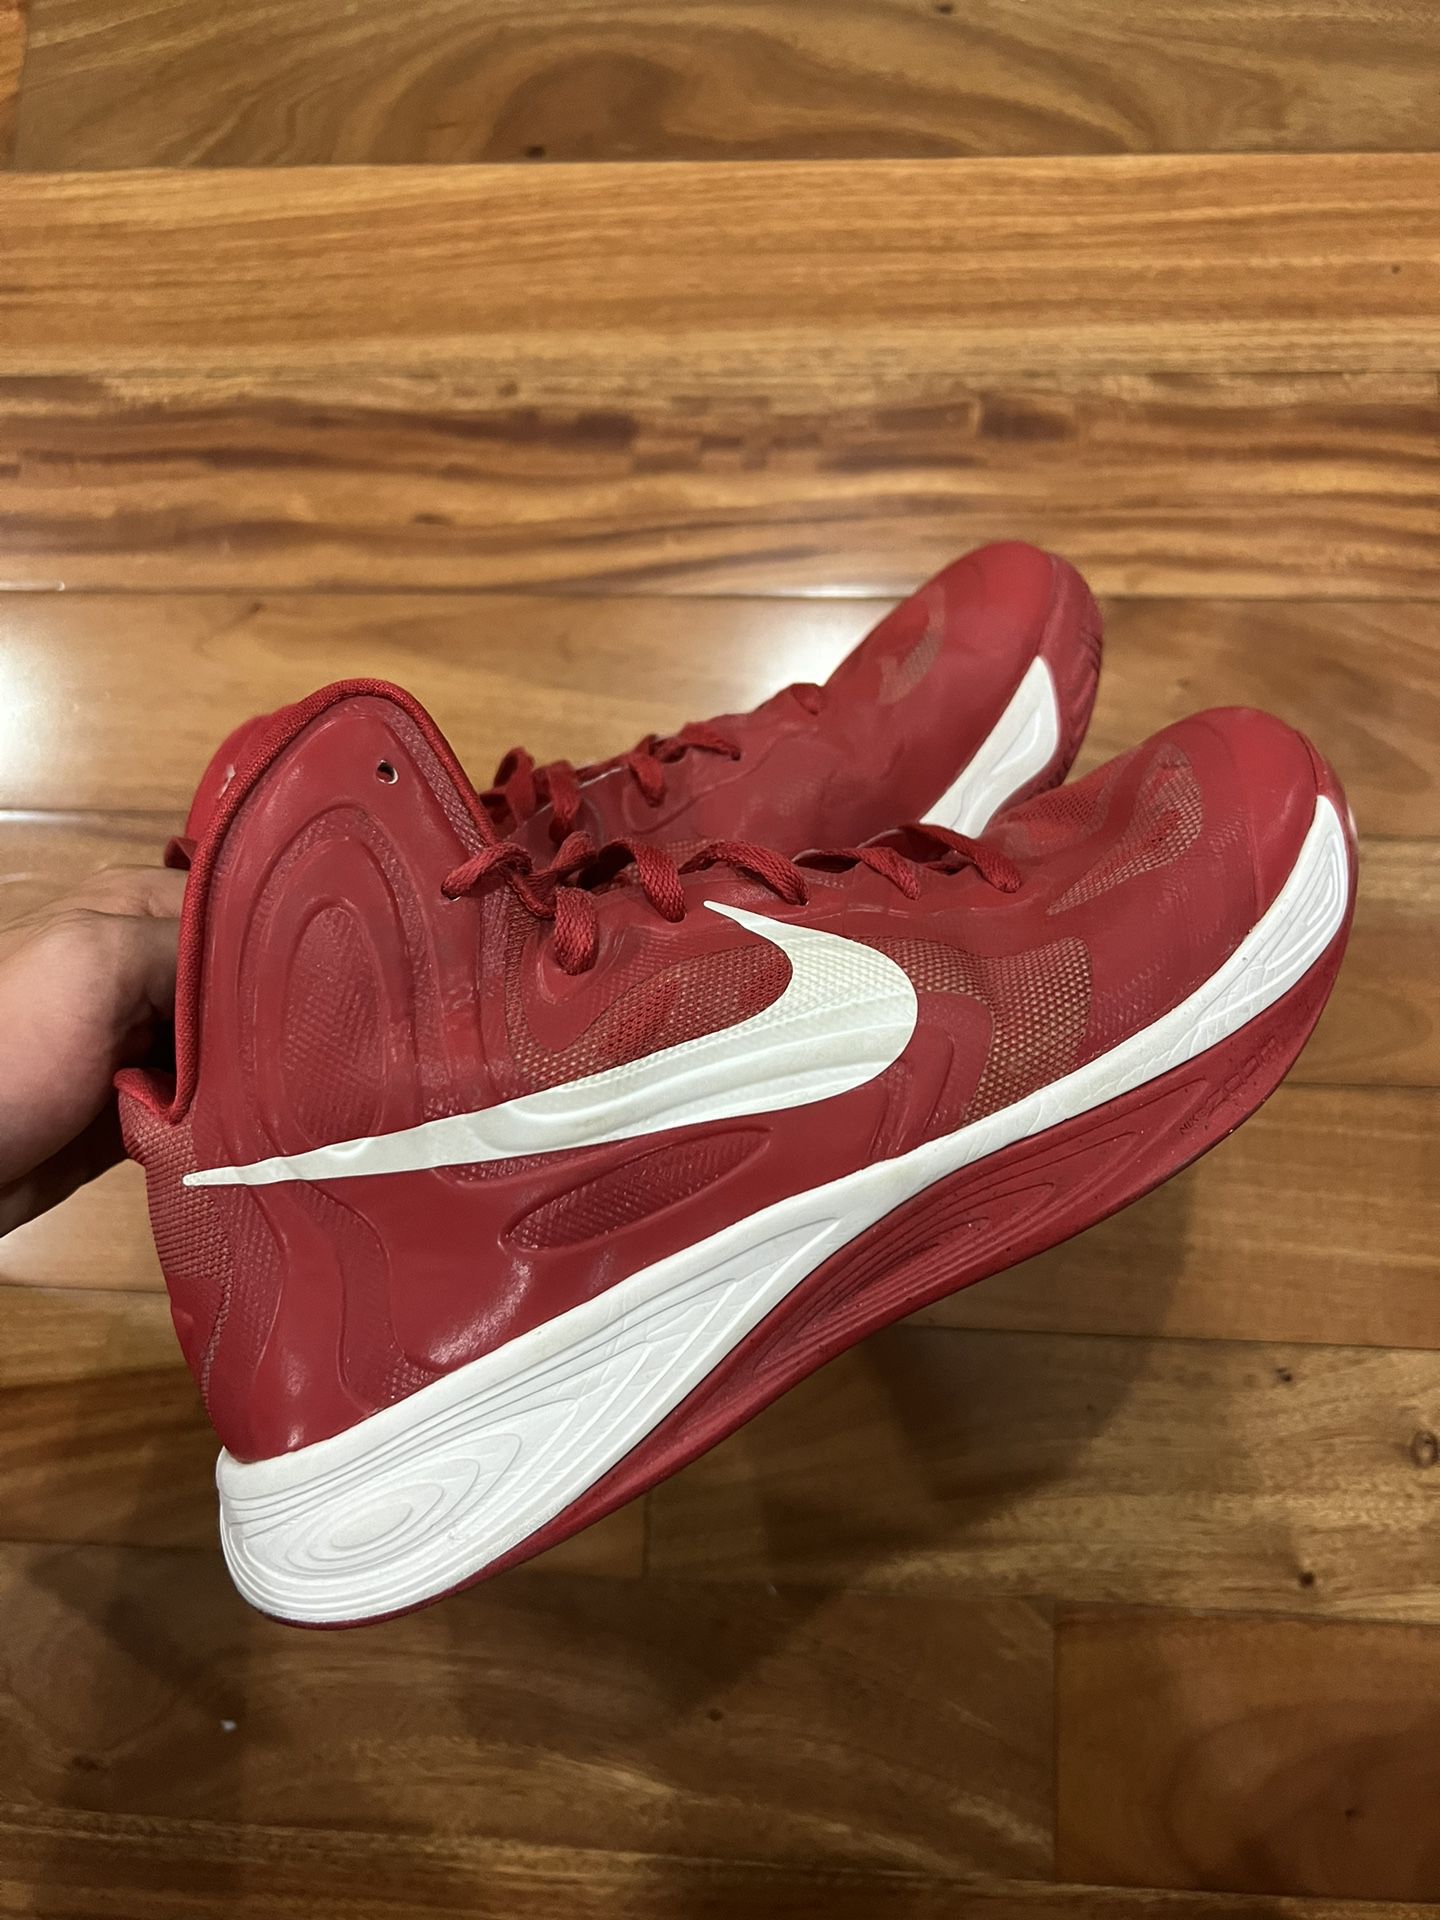 ochtendgloren Lijm Rond en rond Nike Hyperfuse Basketball Shoes sz11 for Sale in San Diego, CA - OfferUp